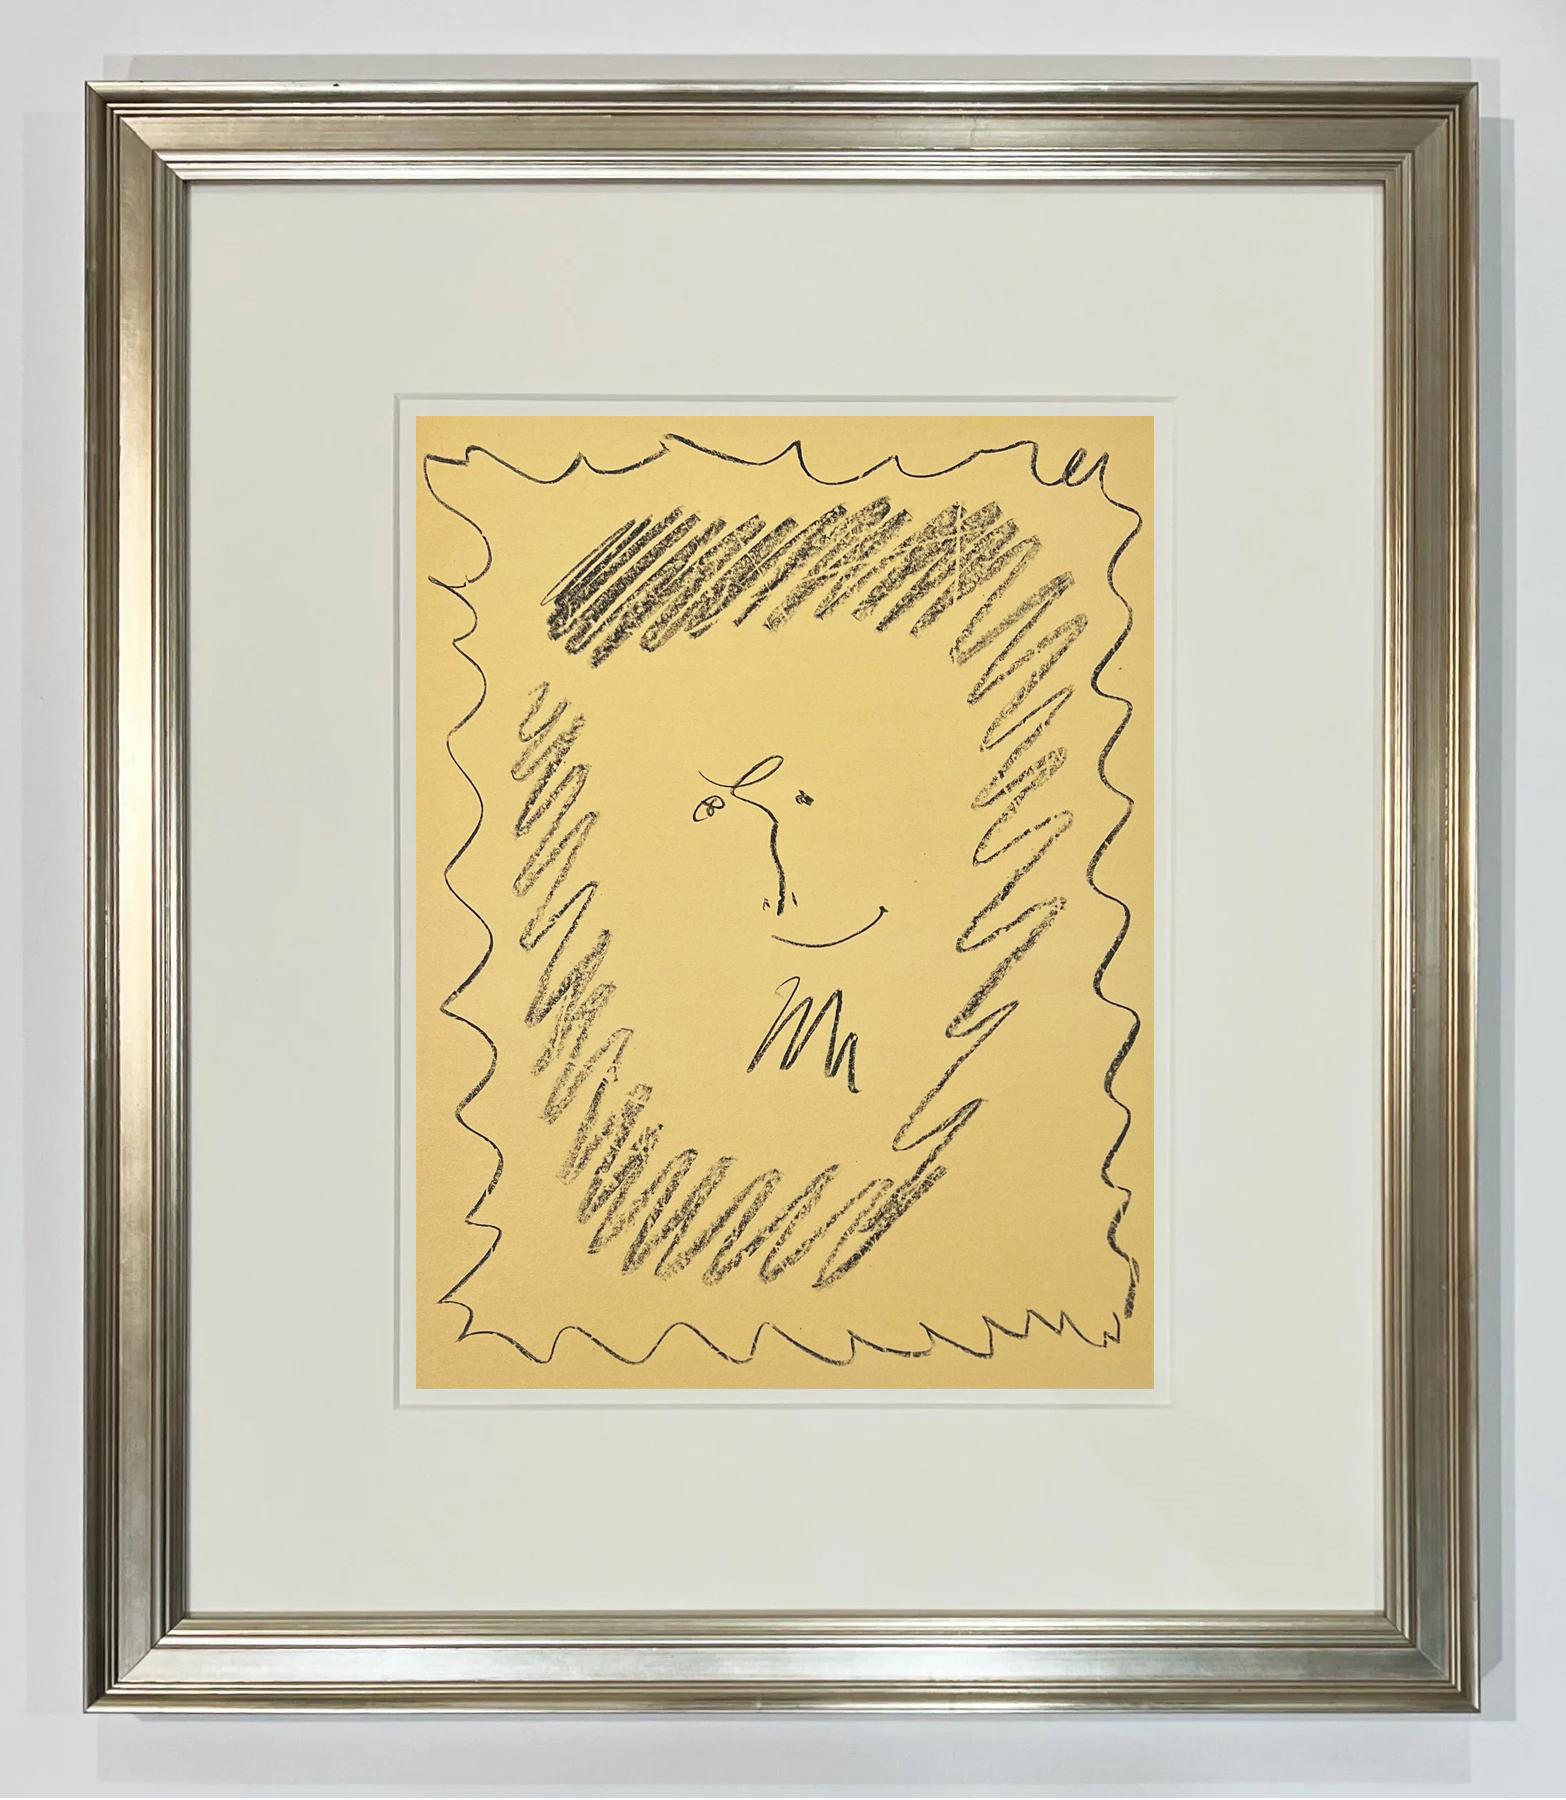 Bacchanale, couverture de la lithographie III de Picasso - Print de Pablo Picasso